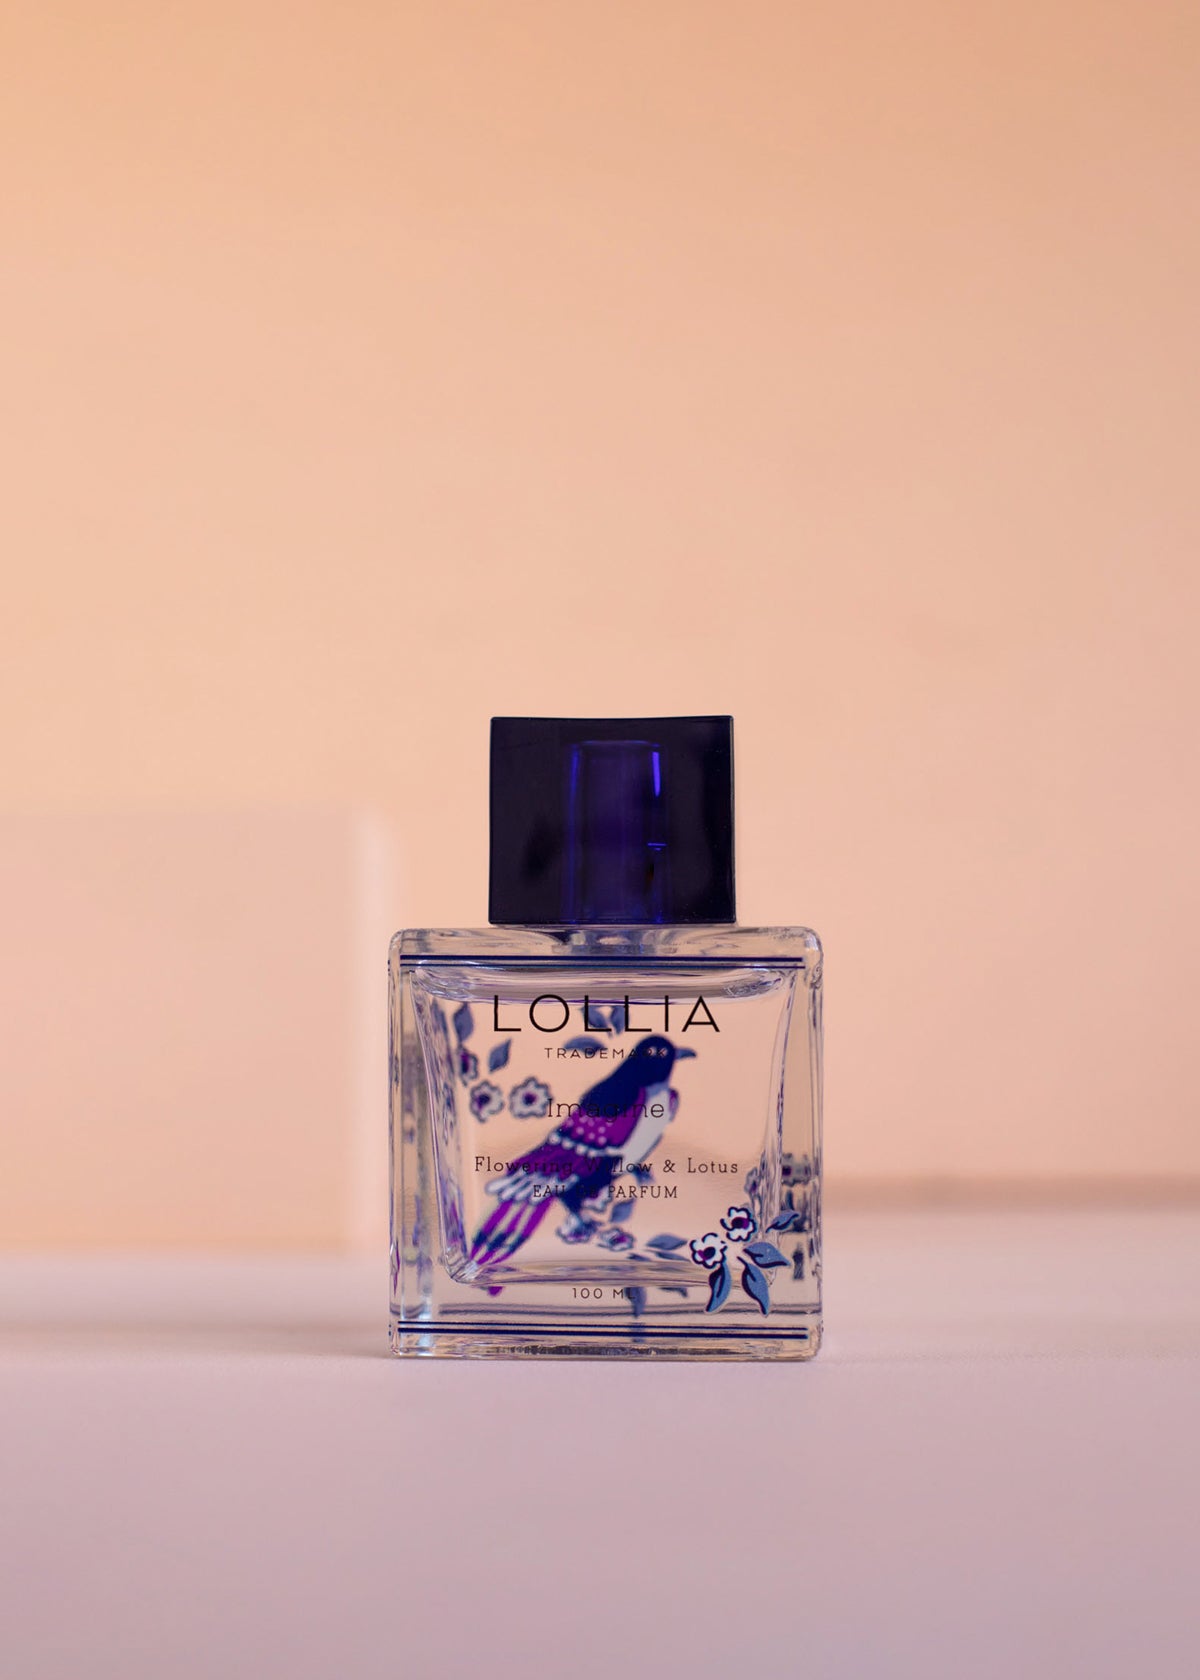 Lollia Eau de Parfum